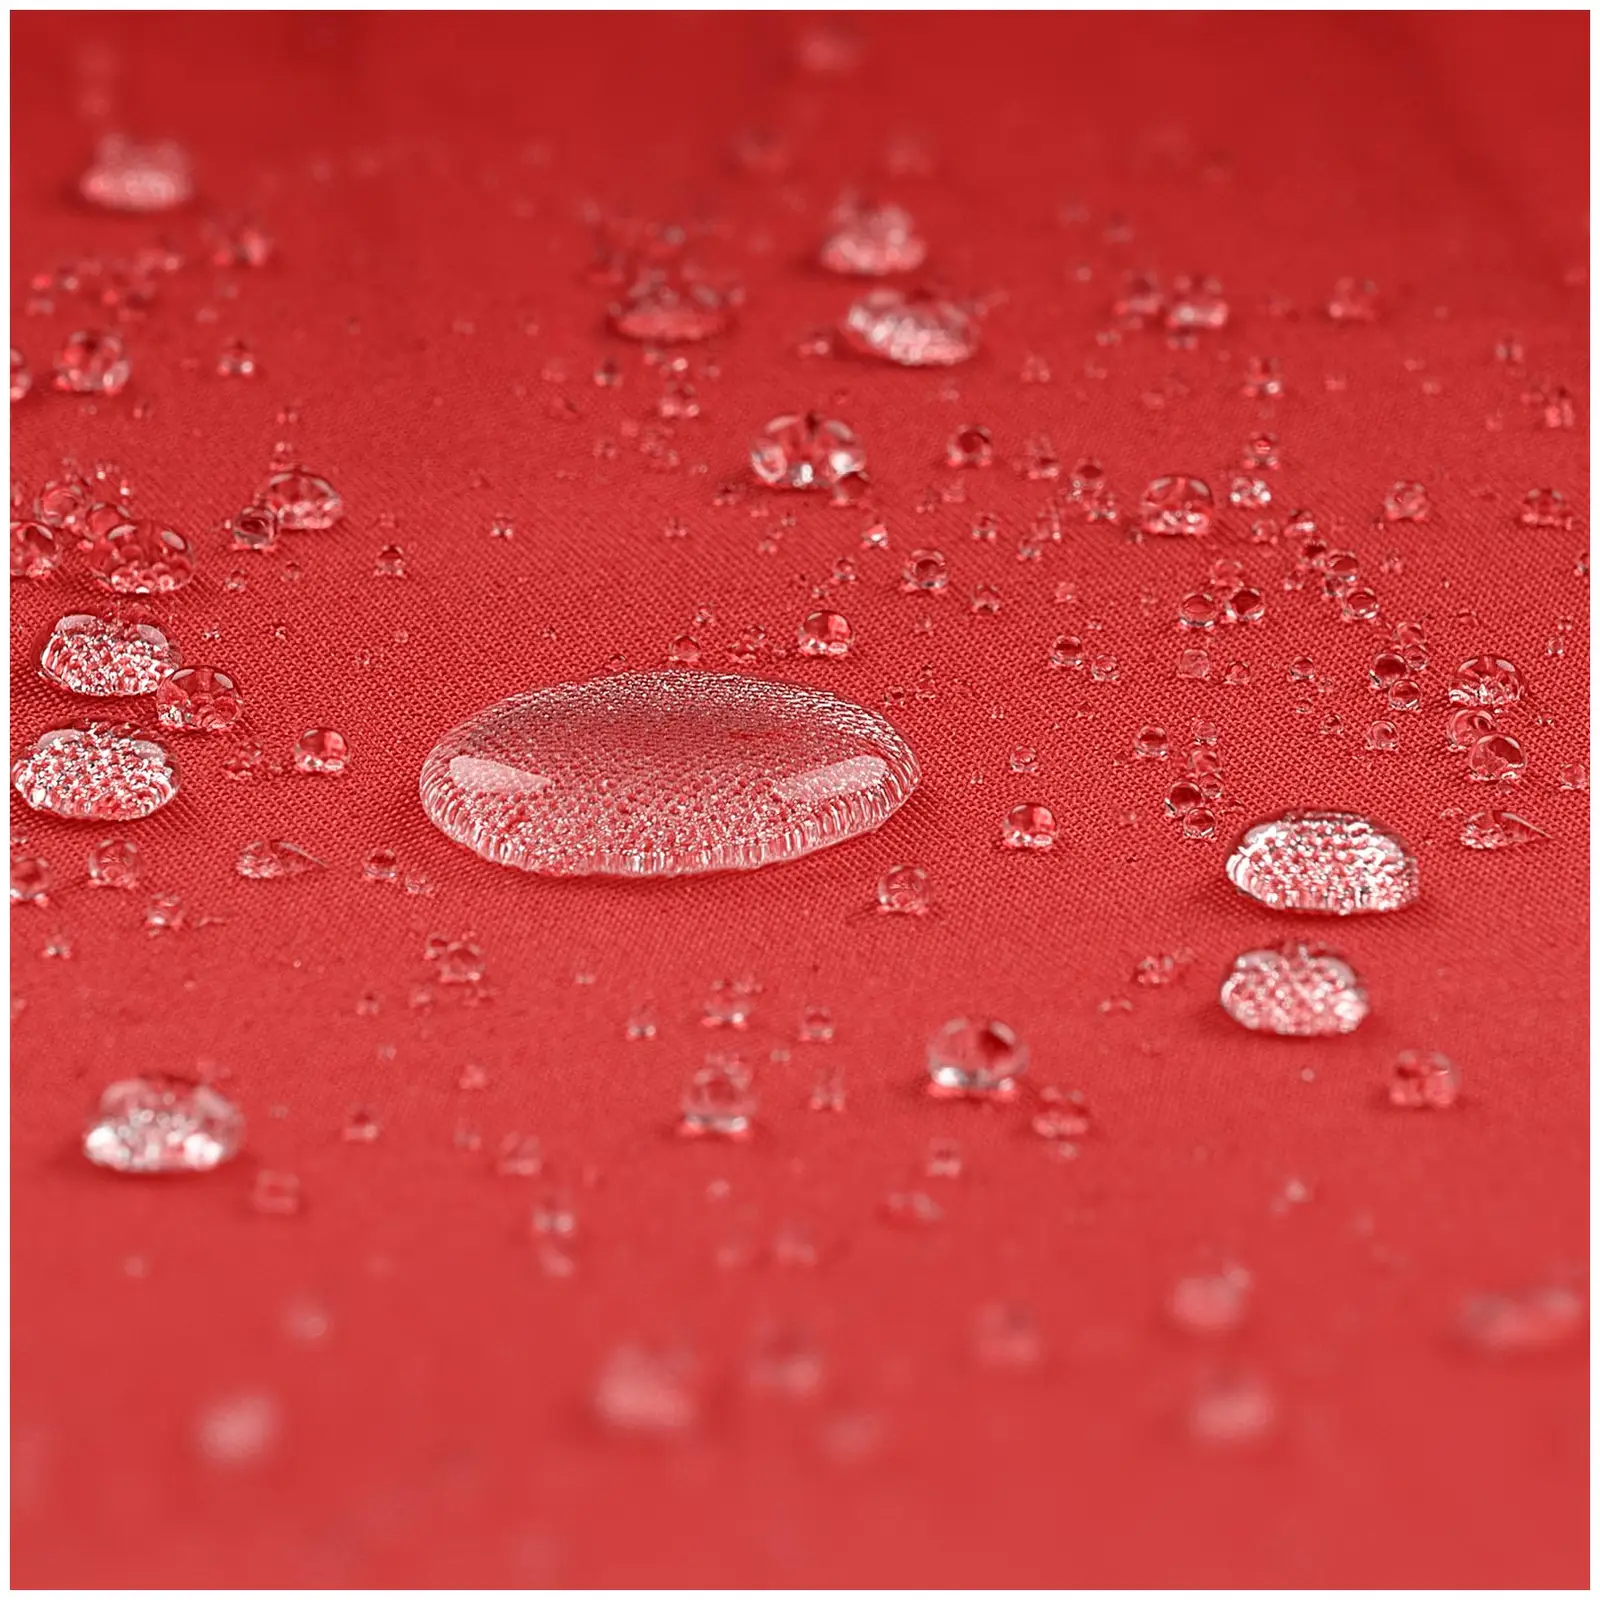 Parasol ogrodowy - czerwony - sześciokątny - Ø300 cm - uchylny